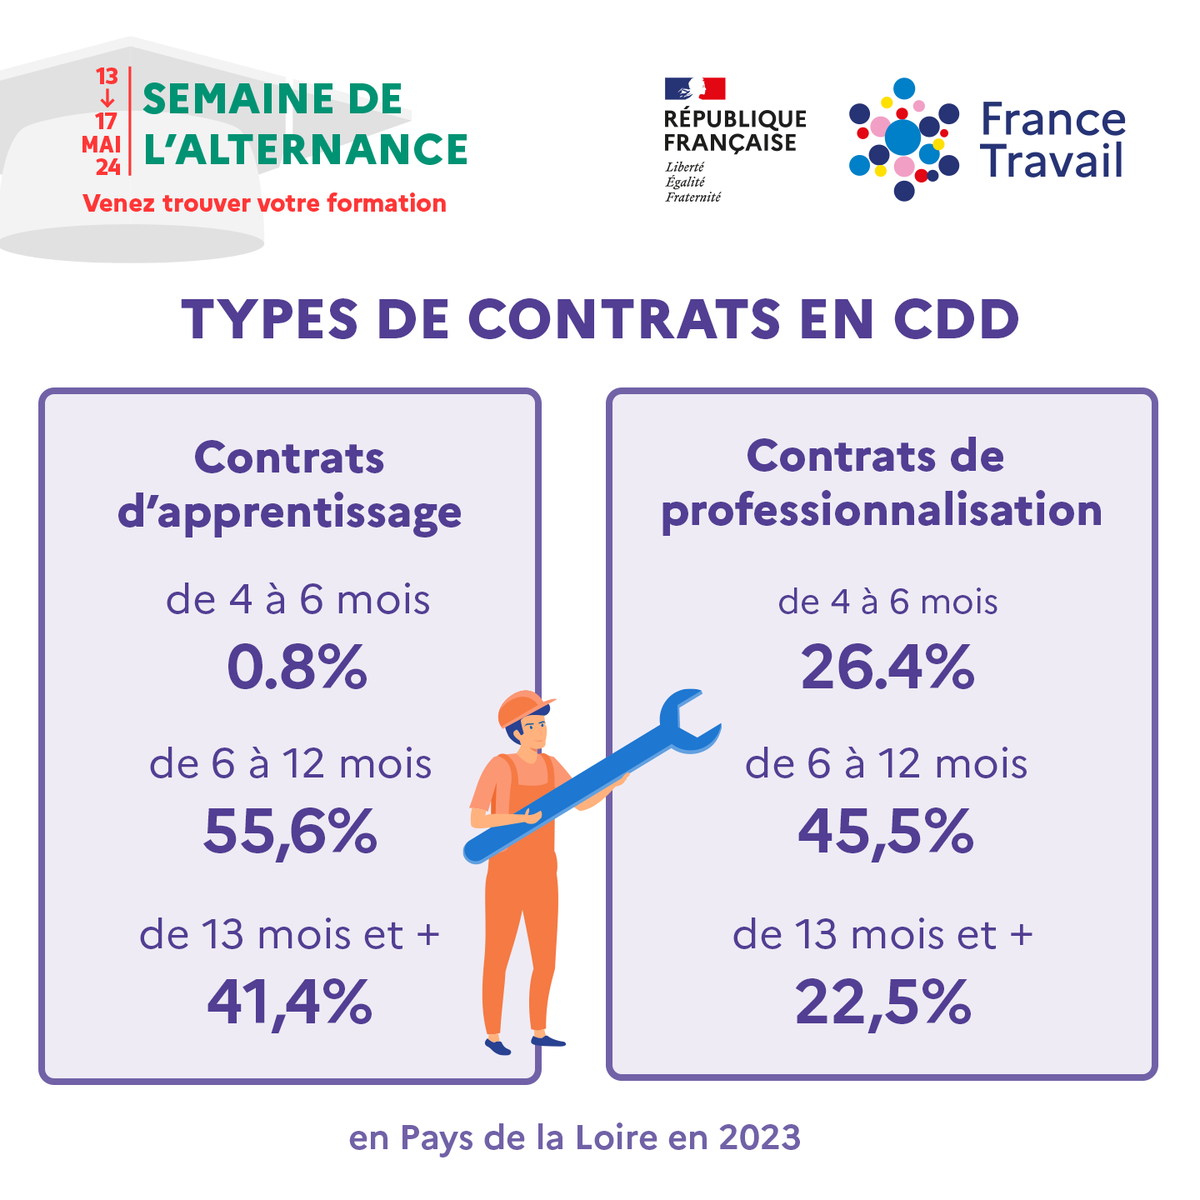 *En Pays de la Loire, les offres en contrat d’apprentissage déposées à @FranceTravail concernent en très grande majorité des CDD supérieurs à 6 mois. Les offres en contrat de professionnalisation sont, pour près de la moitié, des contrats de 6 mois à 1 an.